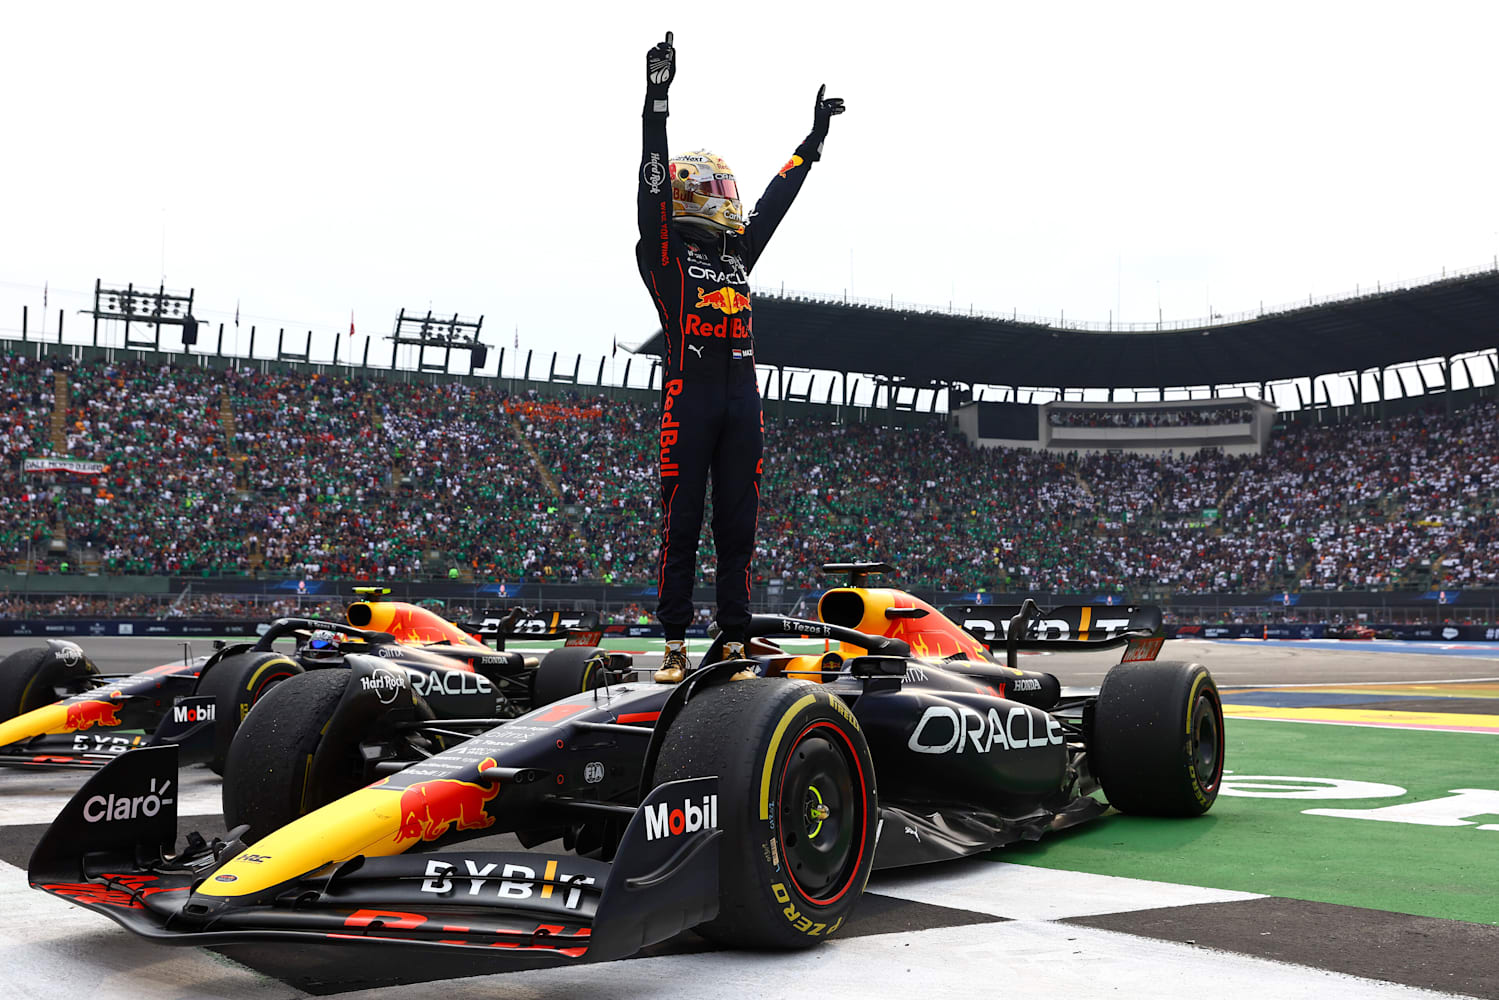 Com campeão Max Verstappen, Red Bull apresenta novo carro da F1 para 2022